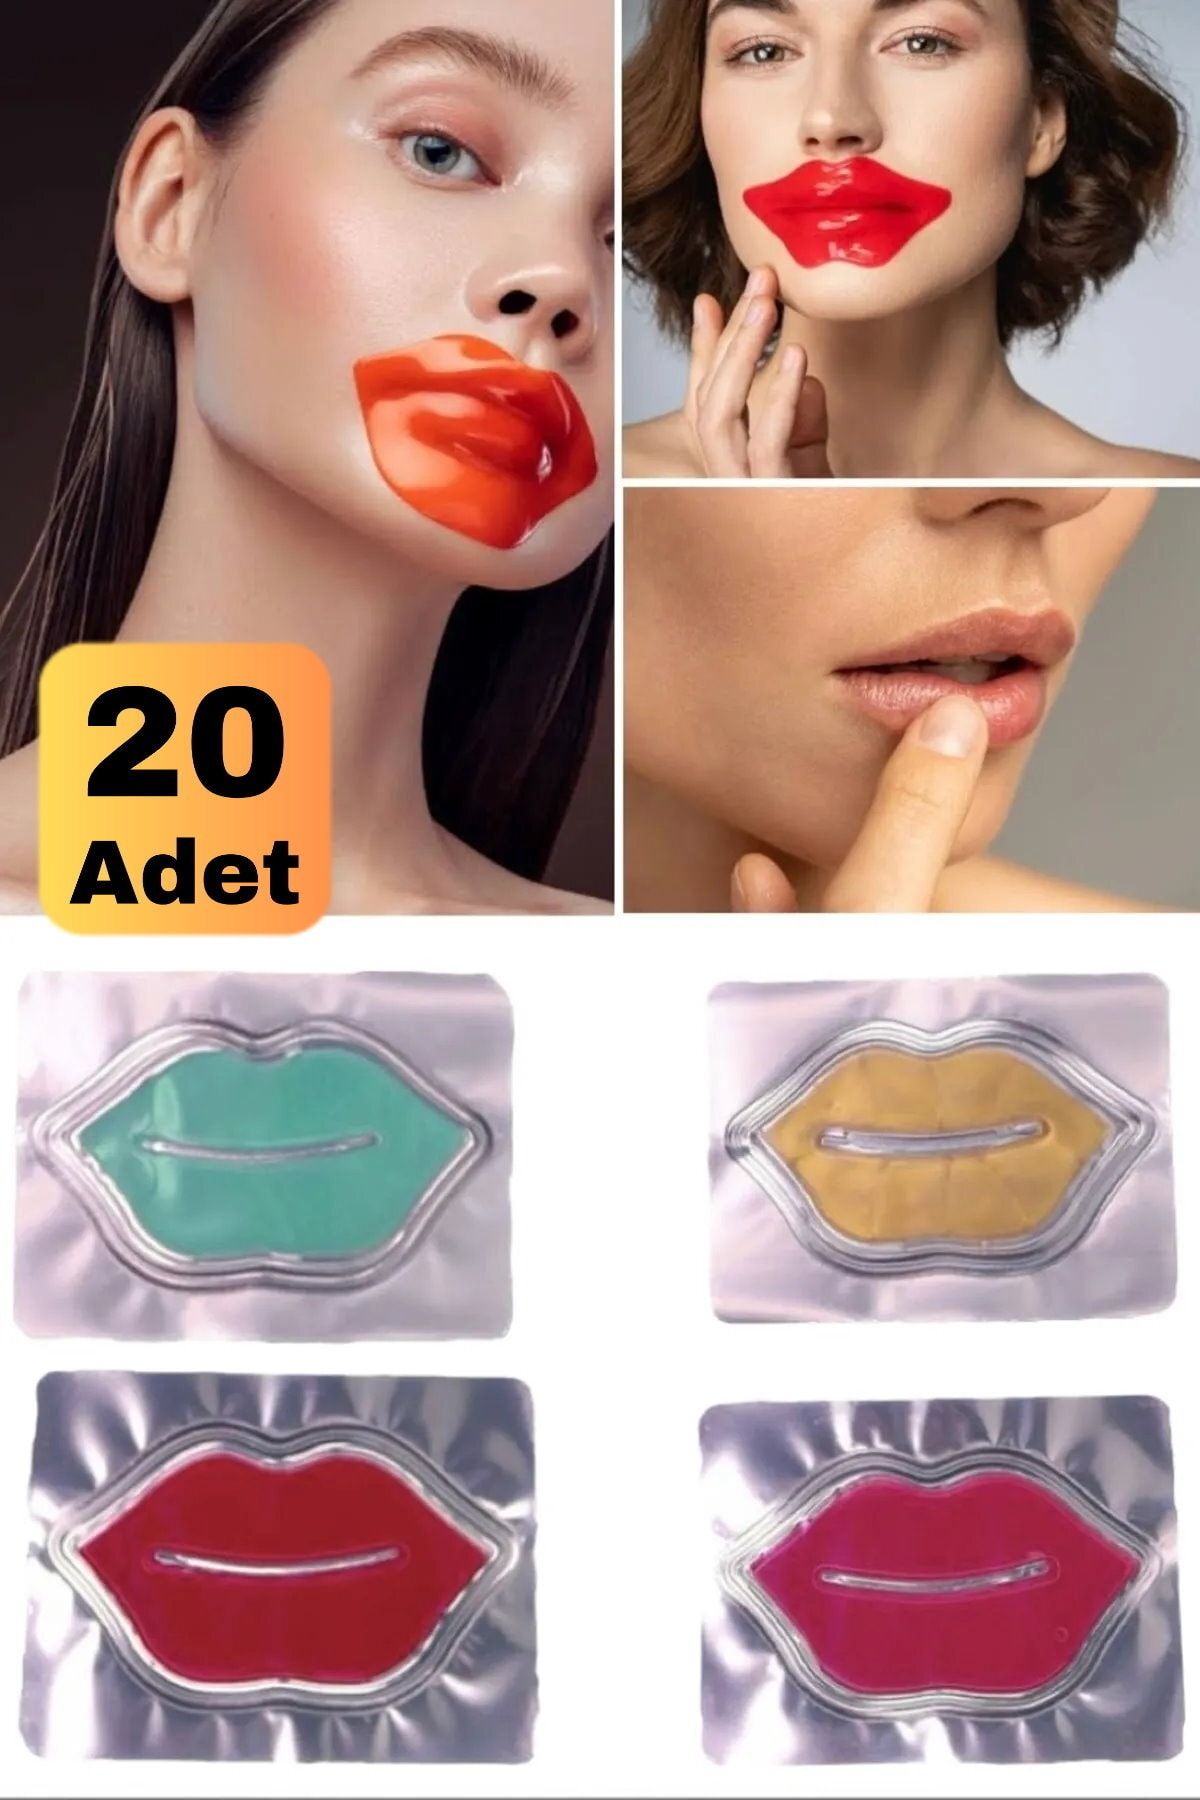 Utelips 20 Adet Yaşlanma Karşıtı Besleyici Hidrojen Içerikli Günlük Peeling Jel Maske Make Up Kadın Bakım